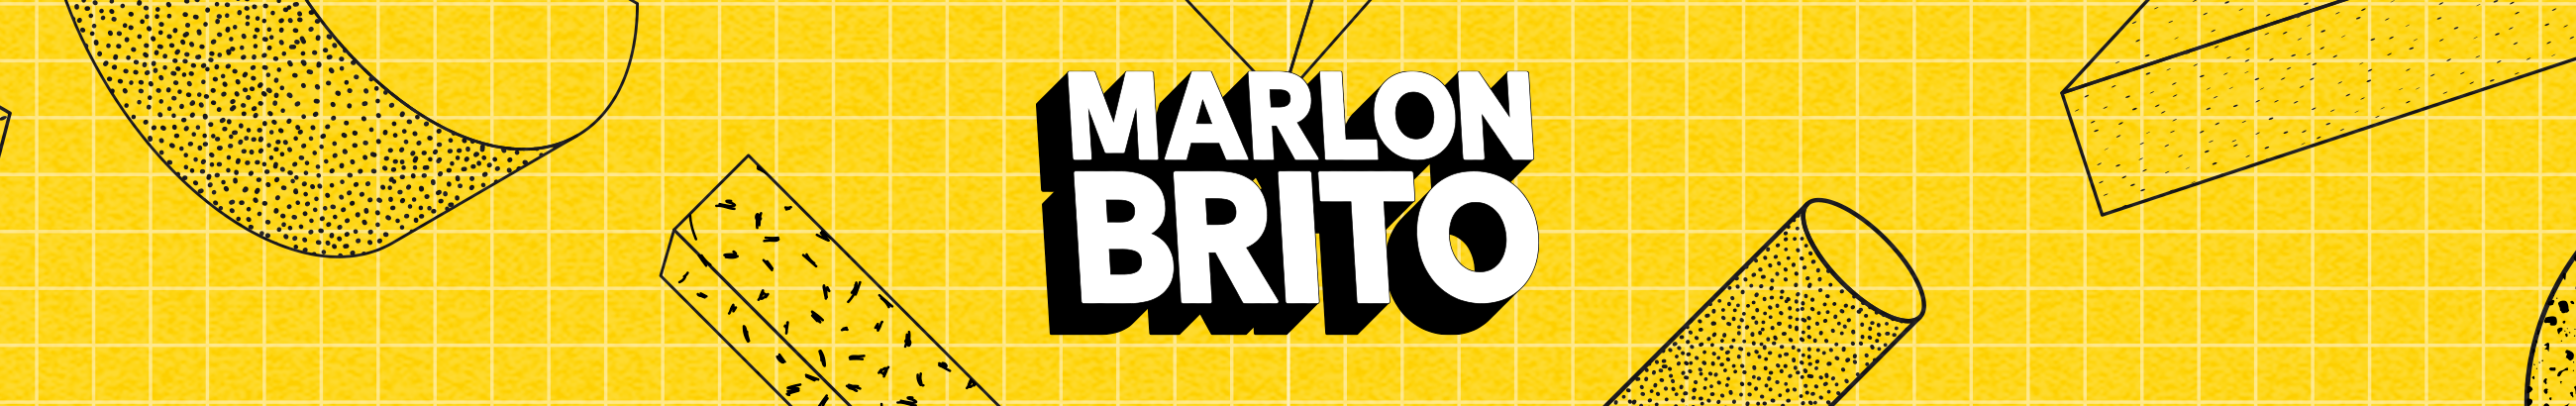 Marlon Brito's profile banner